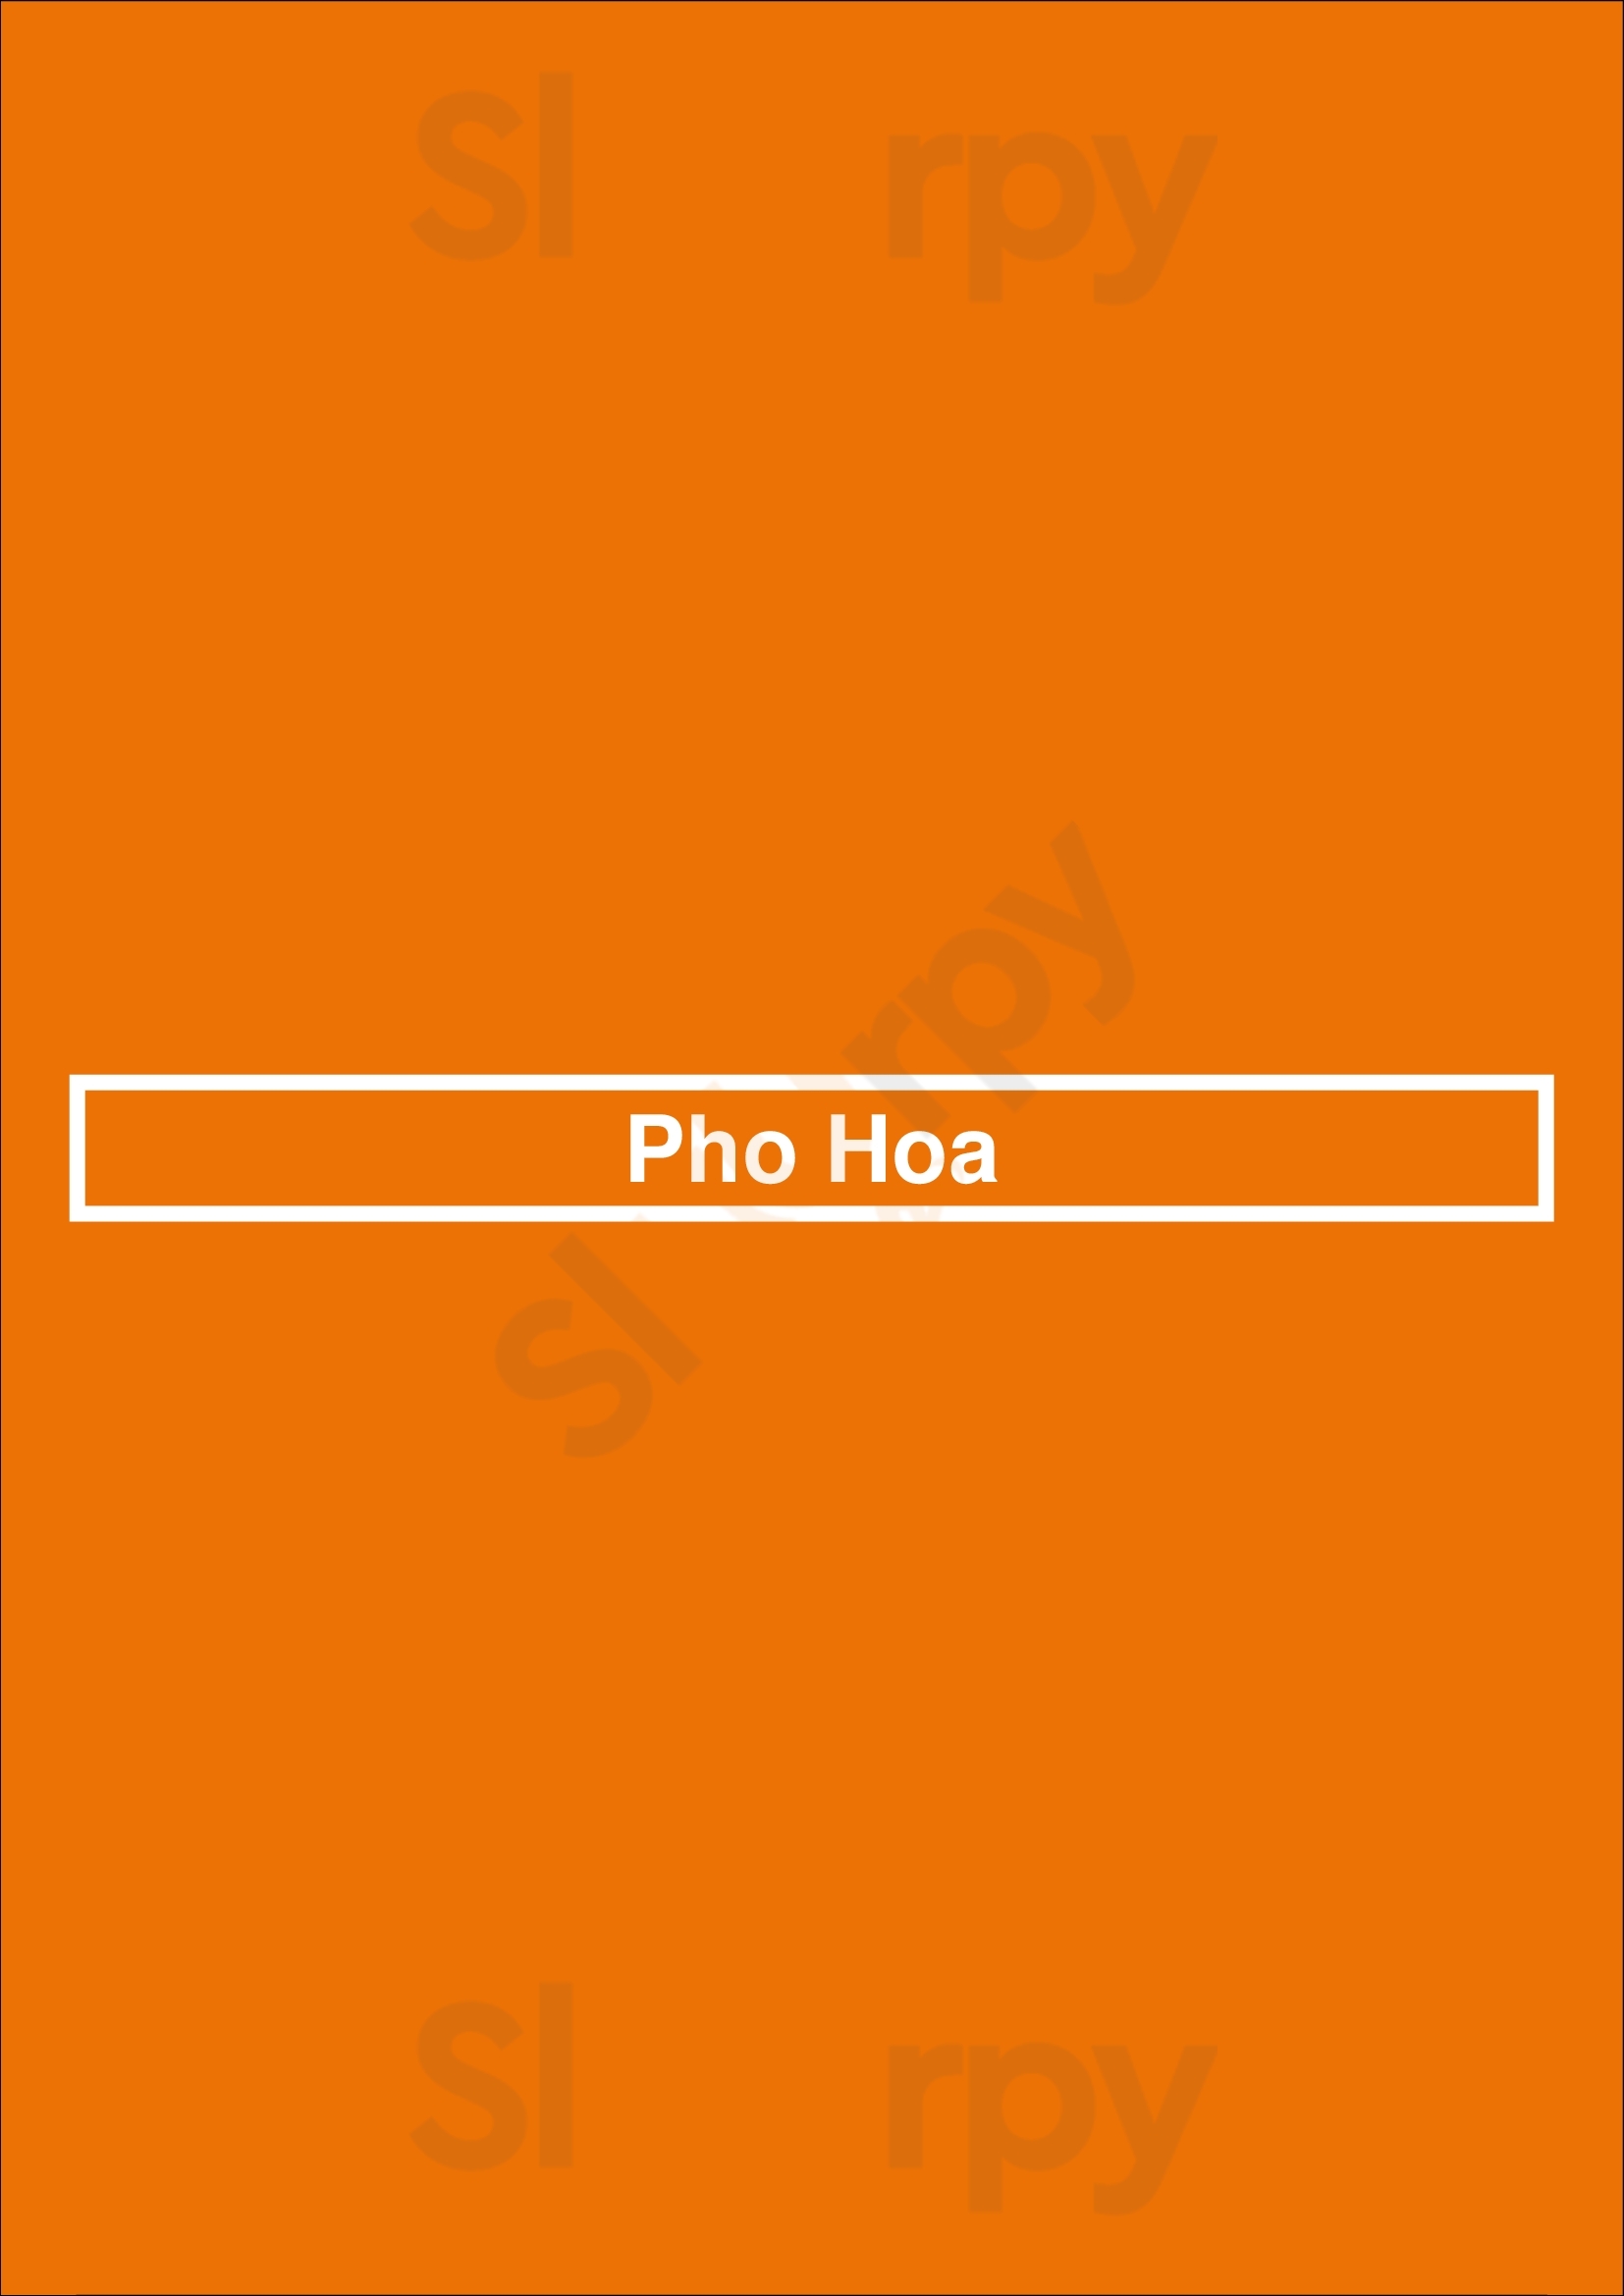 Pho Hoa San Jose Menu - 1